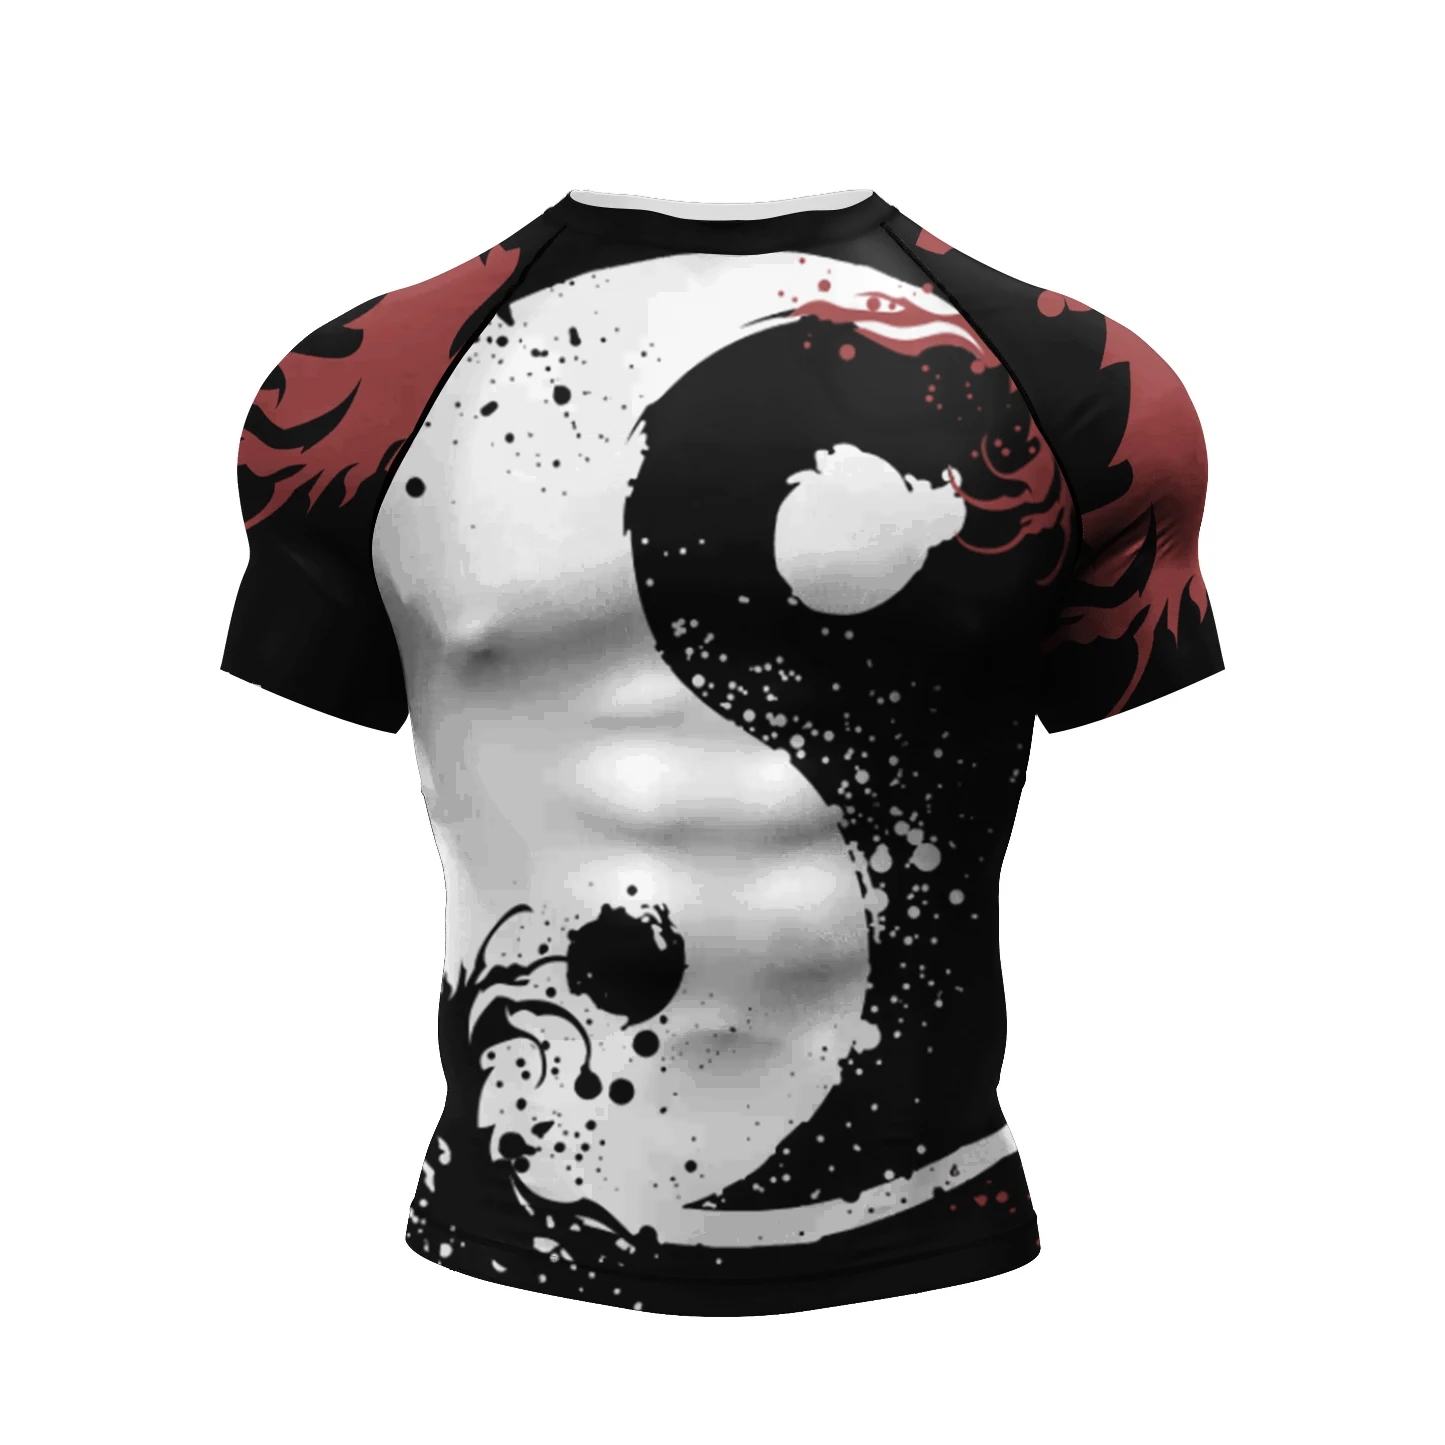 

Быстросохнущие мужские компрессионные боксерские футболки Cody Lundin с коротким рукавом, индивидуальная футболка с сублимационным принтом для MMA BJJ Jiu Jitsu, футболка с защитой от сыпи